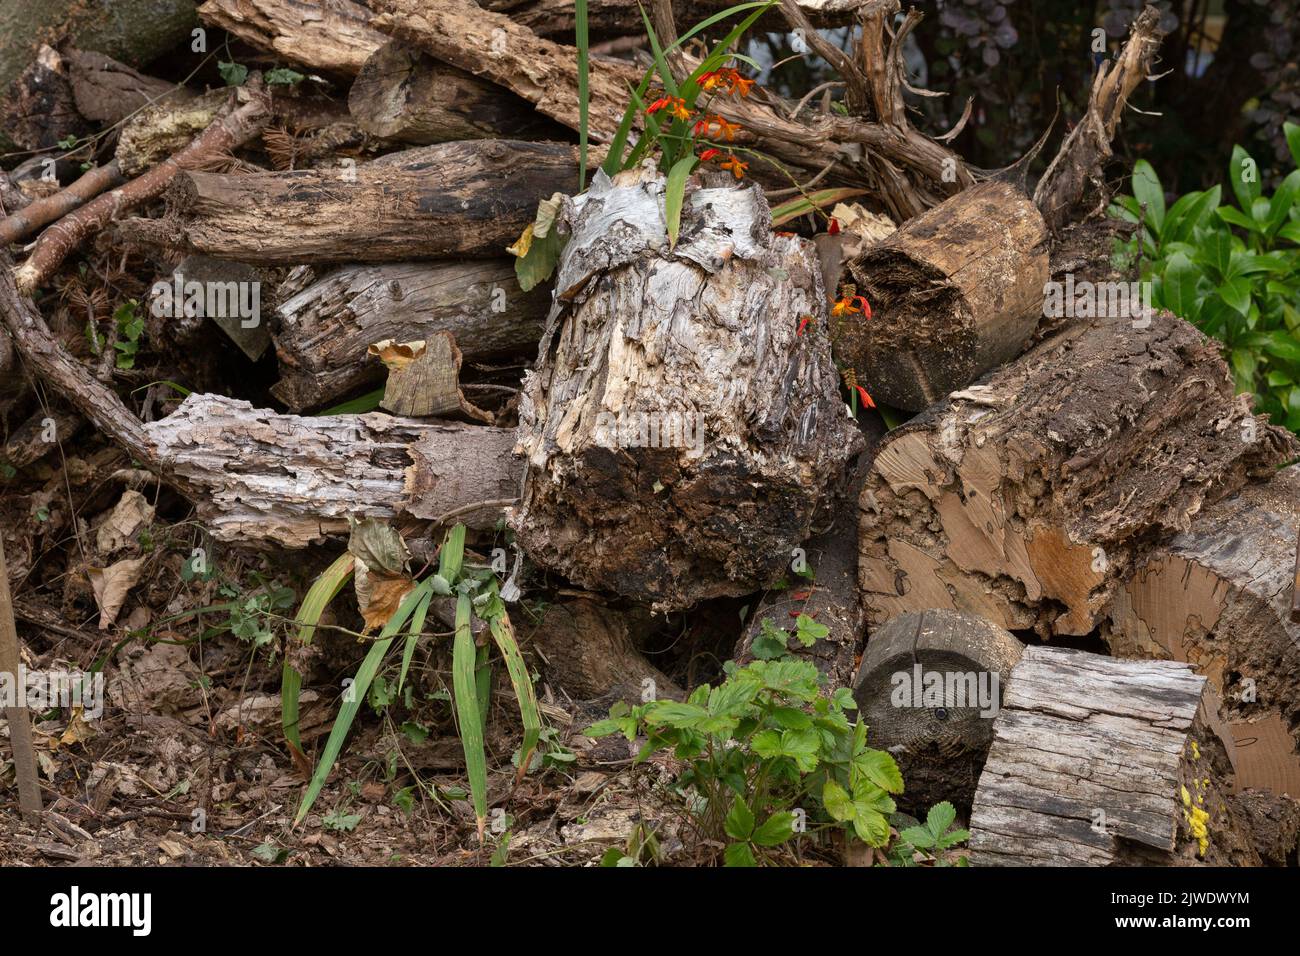 Un tas de bois mort laissé dans un jardin pour la faune. Banque D'Images